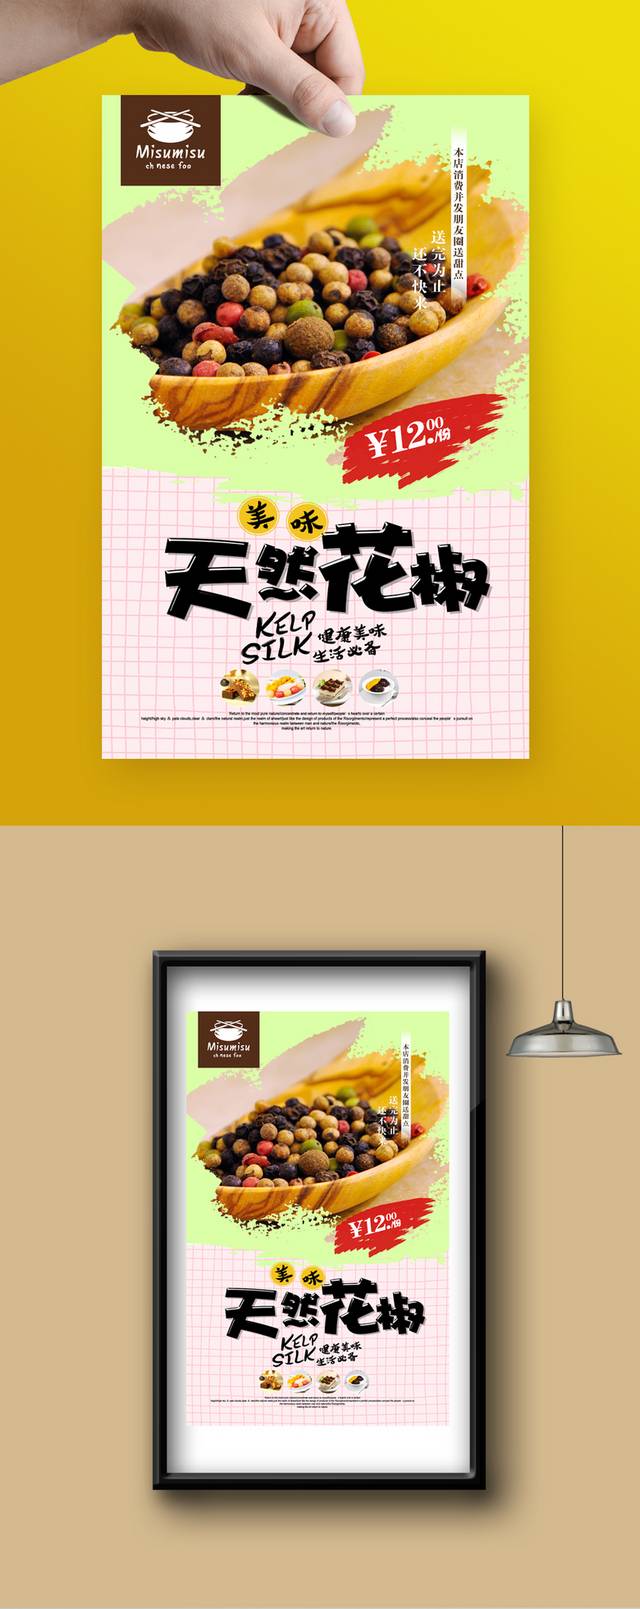 高清花椒宣传海报设计psd模板